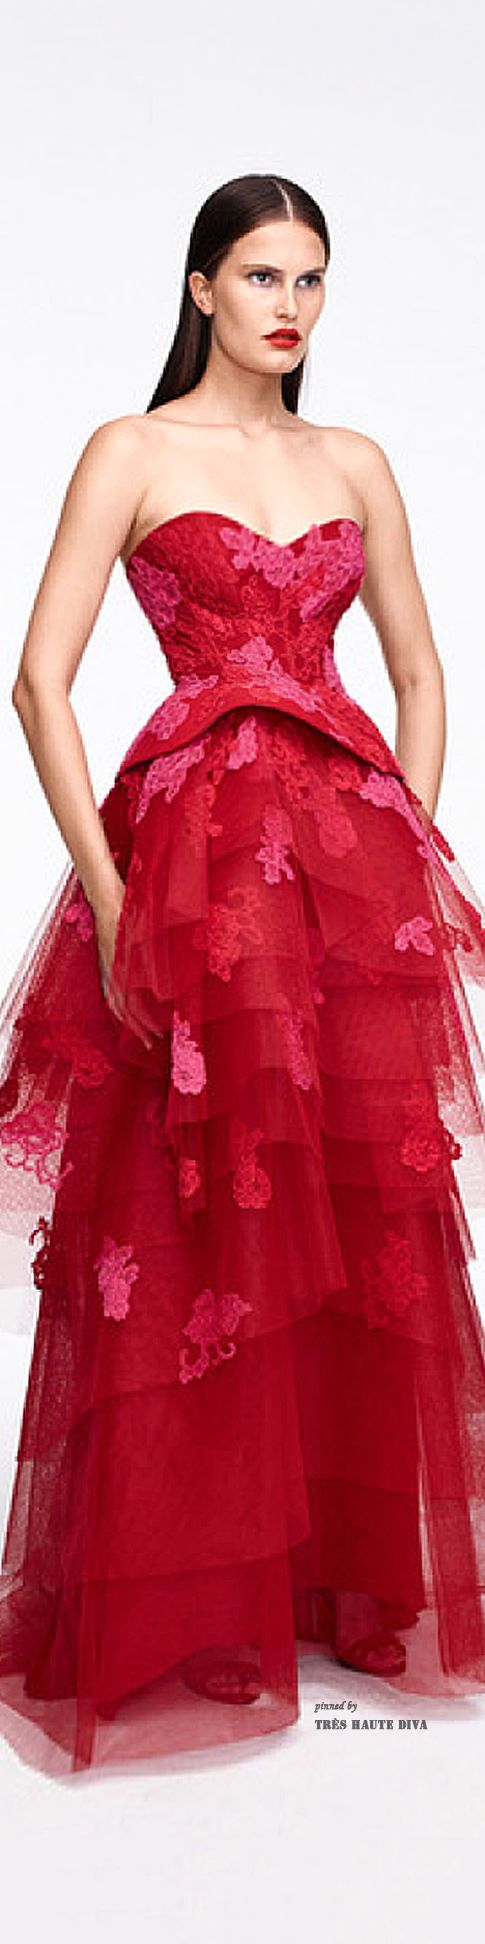 Hochzeit - Kleider ... Hinreißend Reds